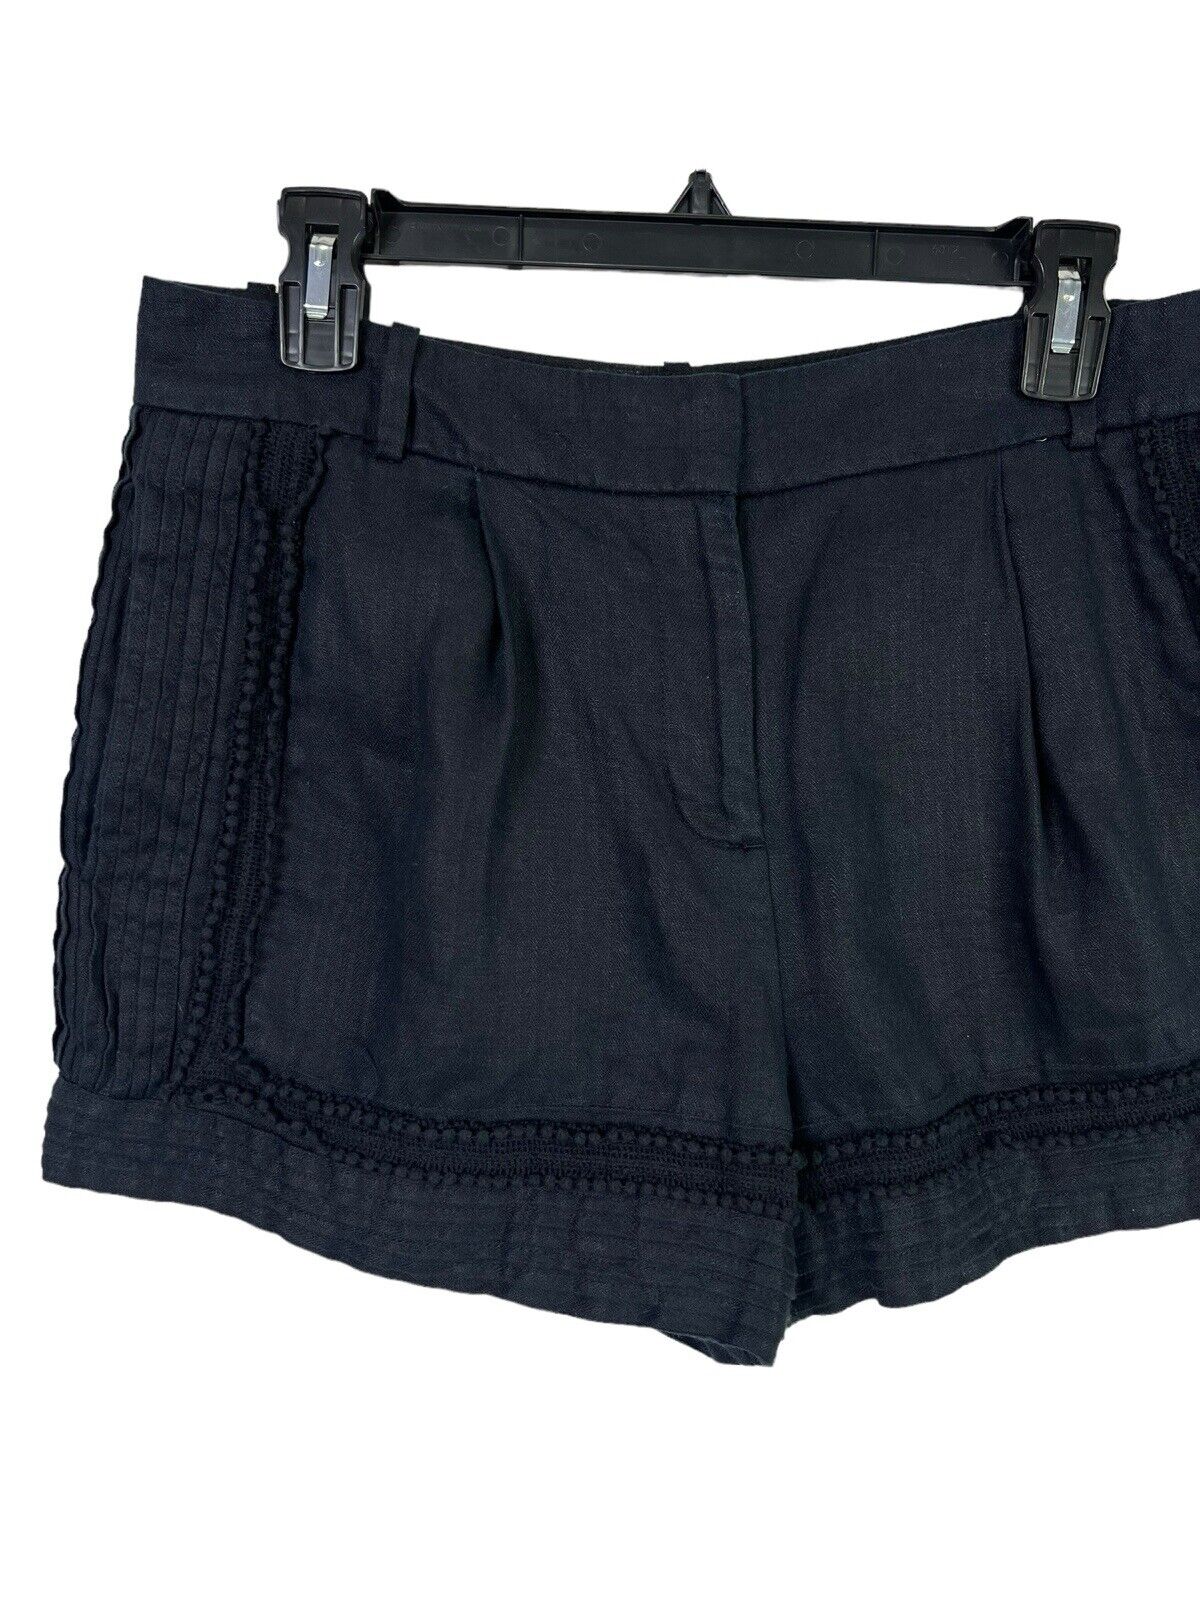 J. Crew Womens Shorts Black  100% Linen Lace Trim… - image 3